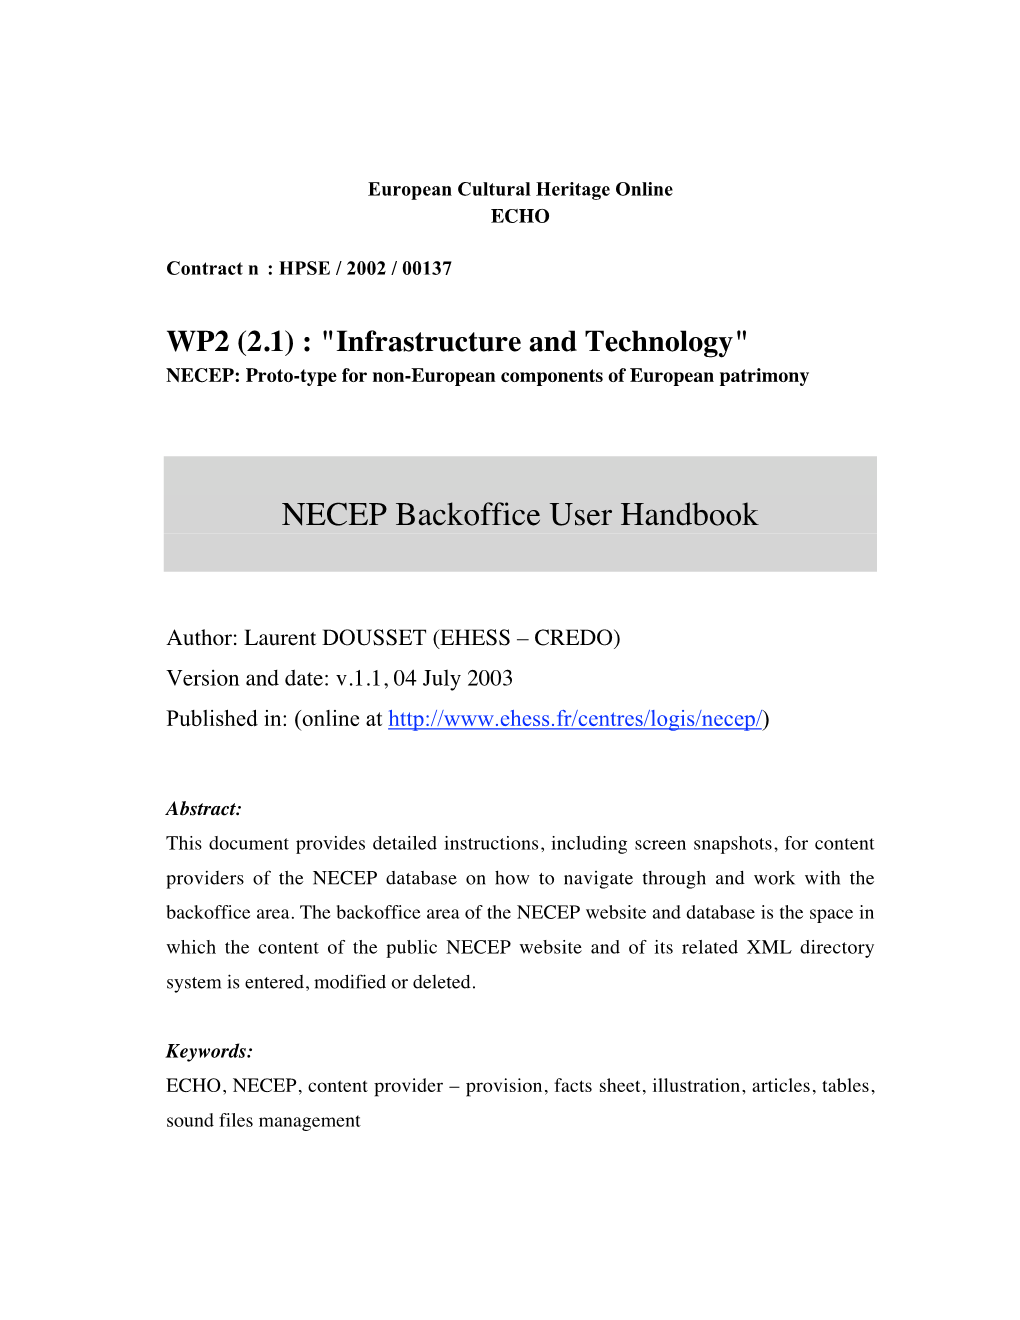 NECEP Backoffice User Handbook